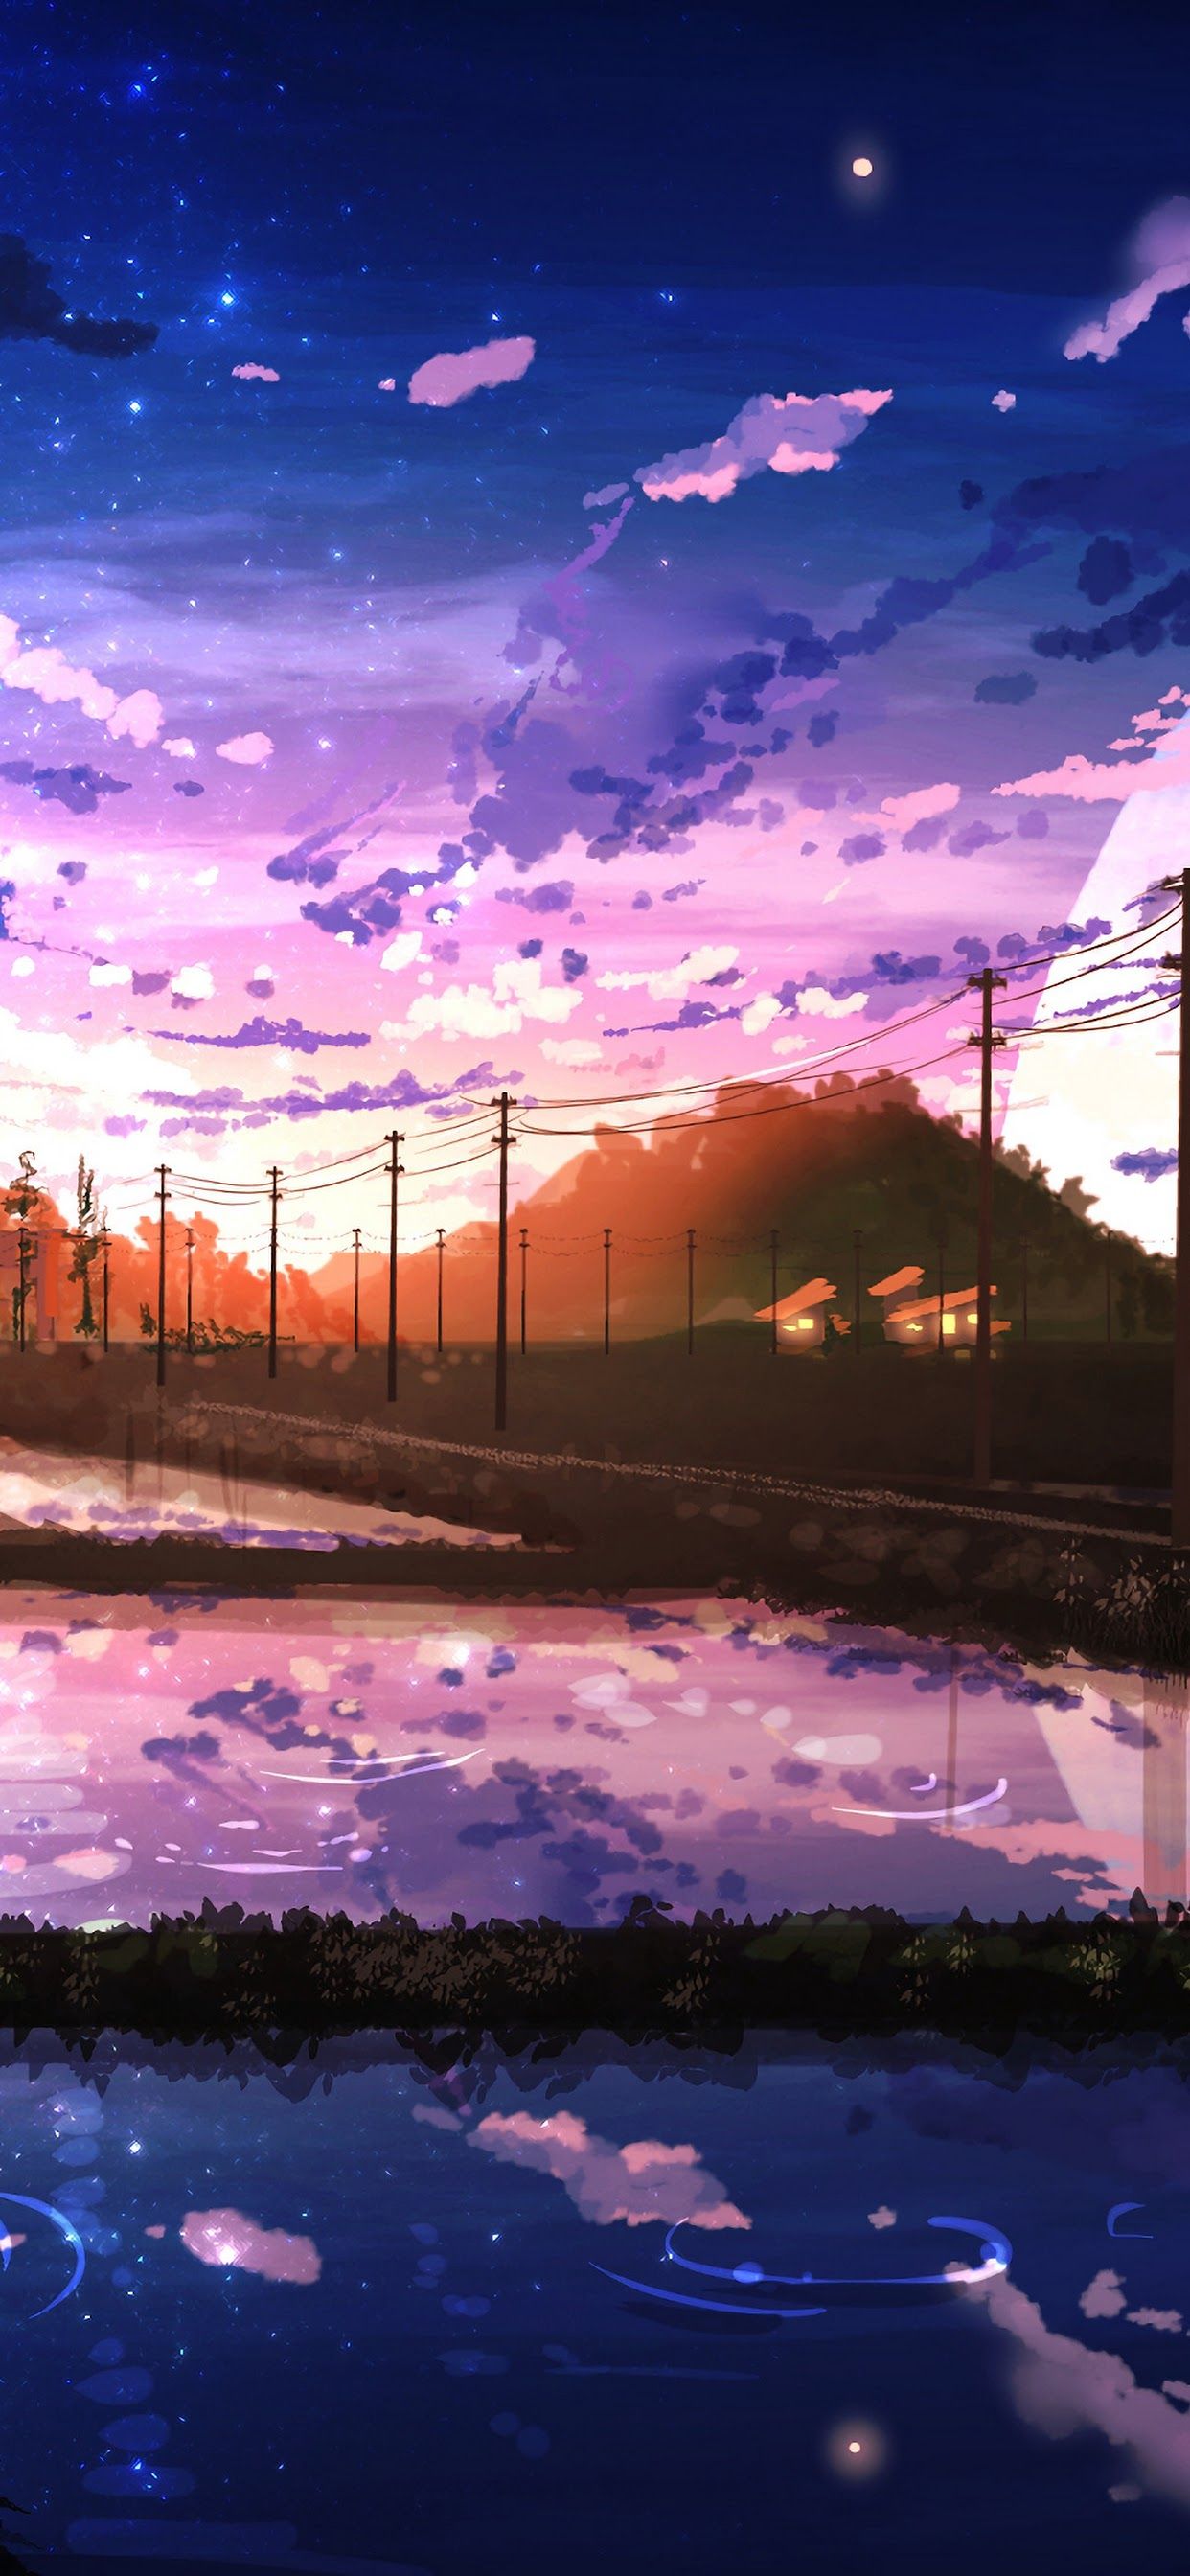 Anime Sunrise Wallpapers K Hd Anime Sunrise Backgrounds On Wallpaperbat